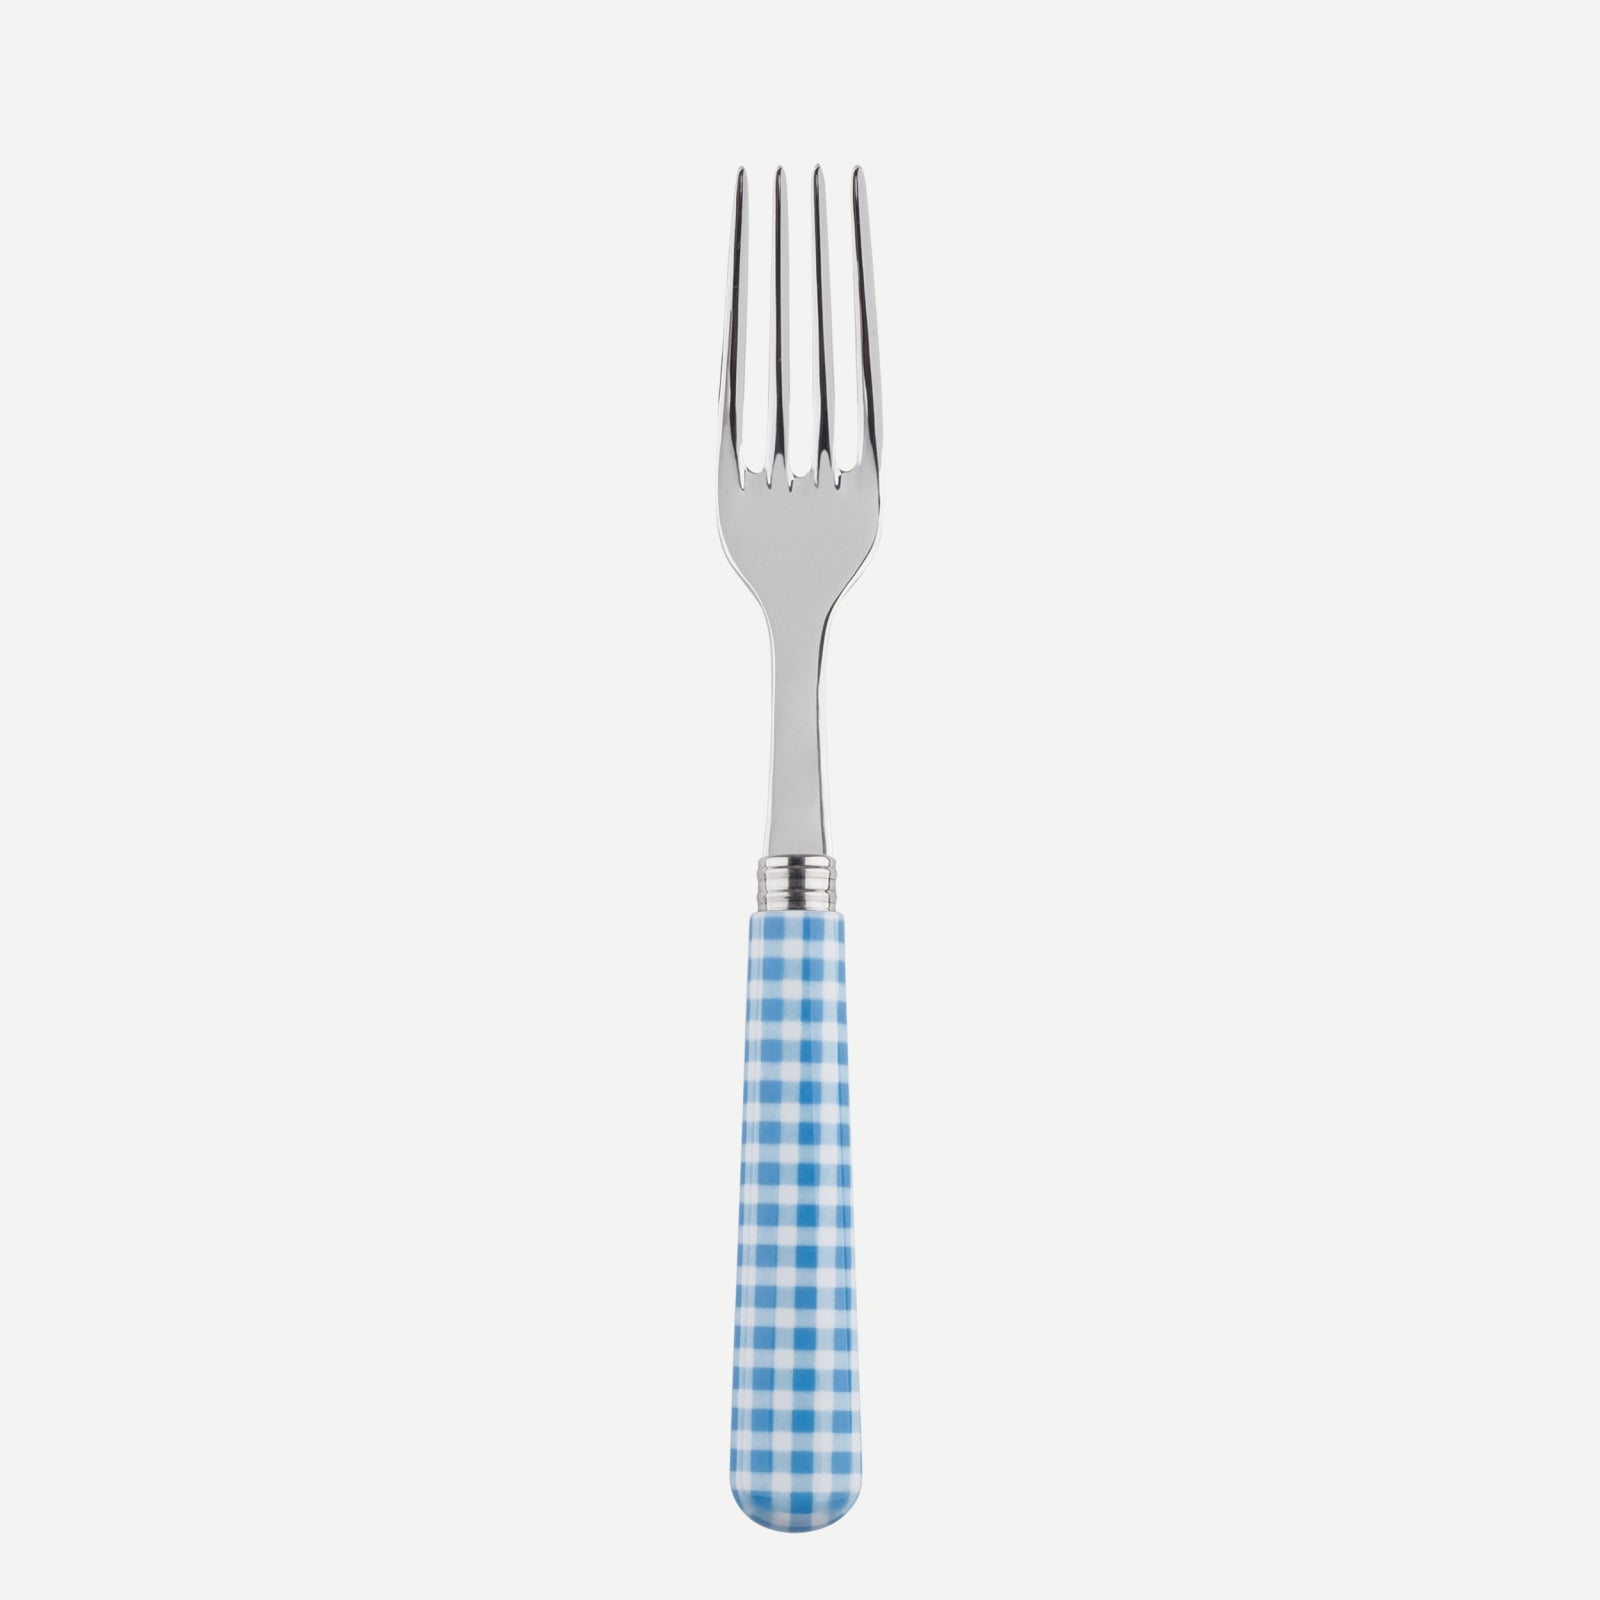 Dinner fork - Gingham - Light blue